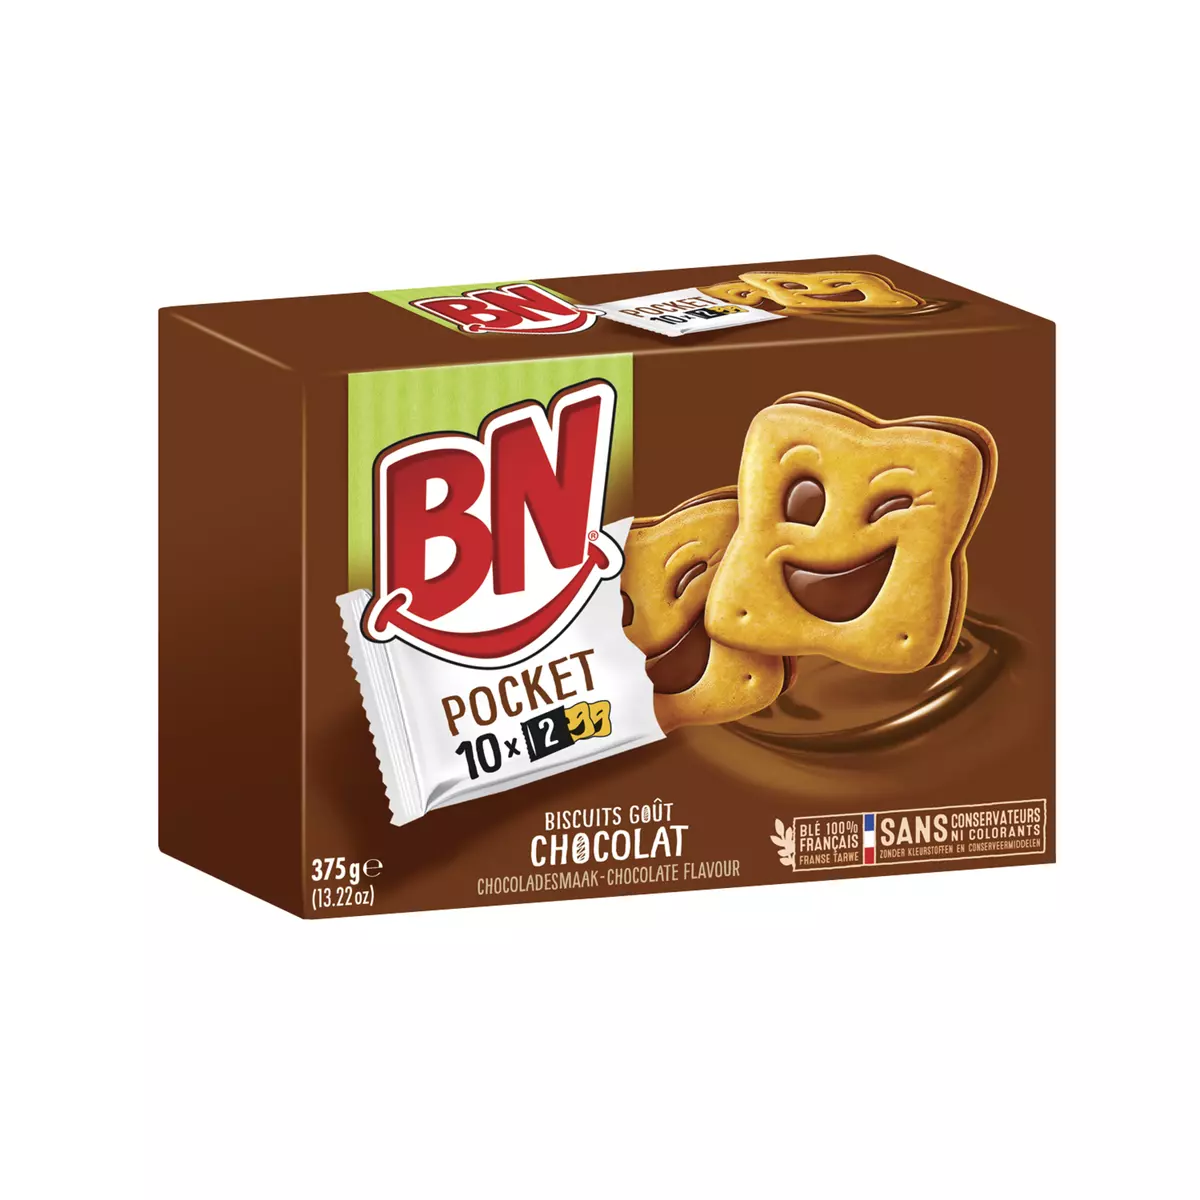 BN Biscuits pocket fourrés goût chocolat, sachets fraîcheur 10x2 biscuits 375g